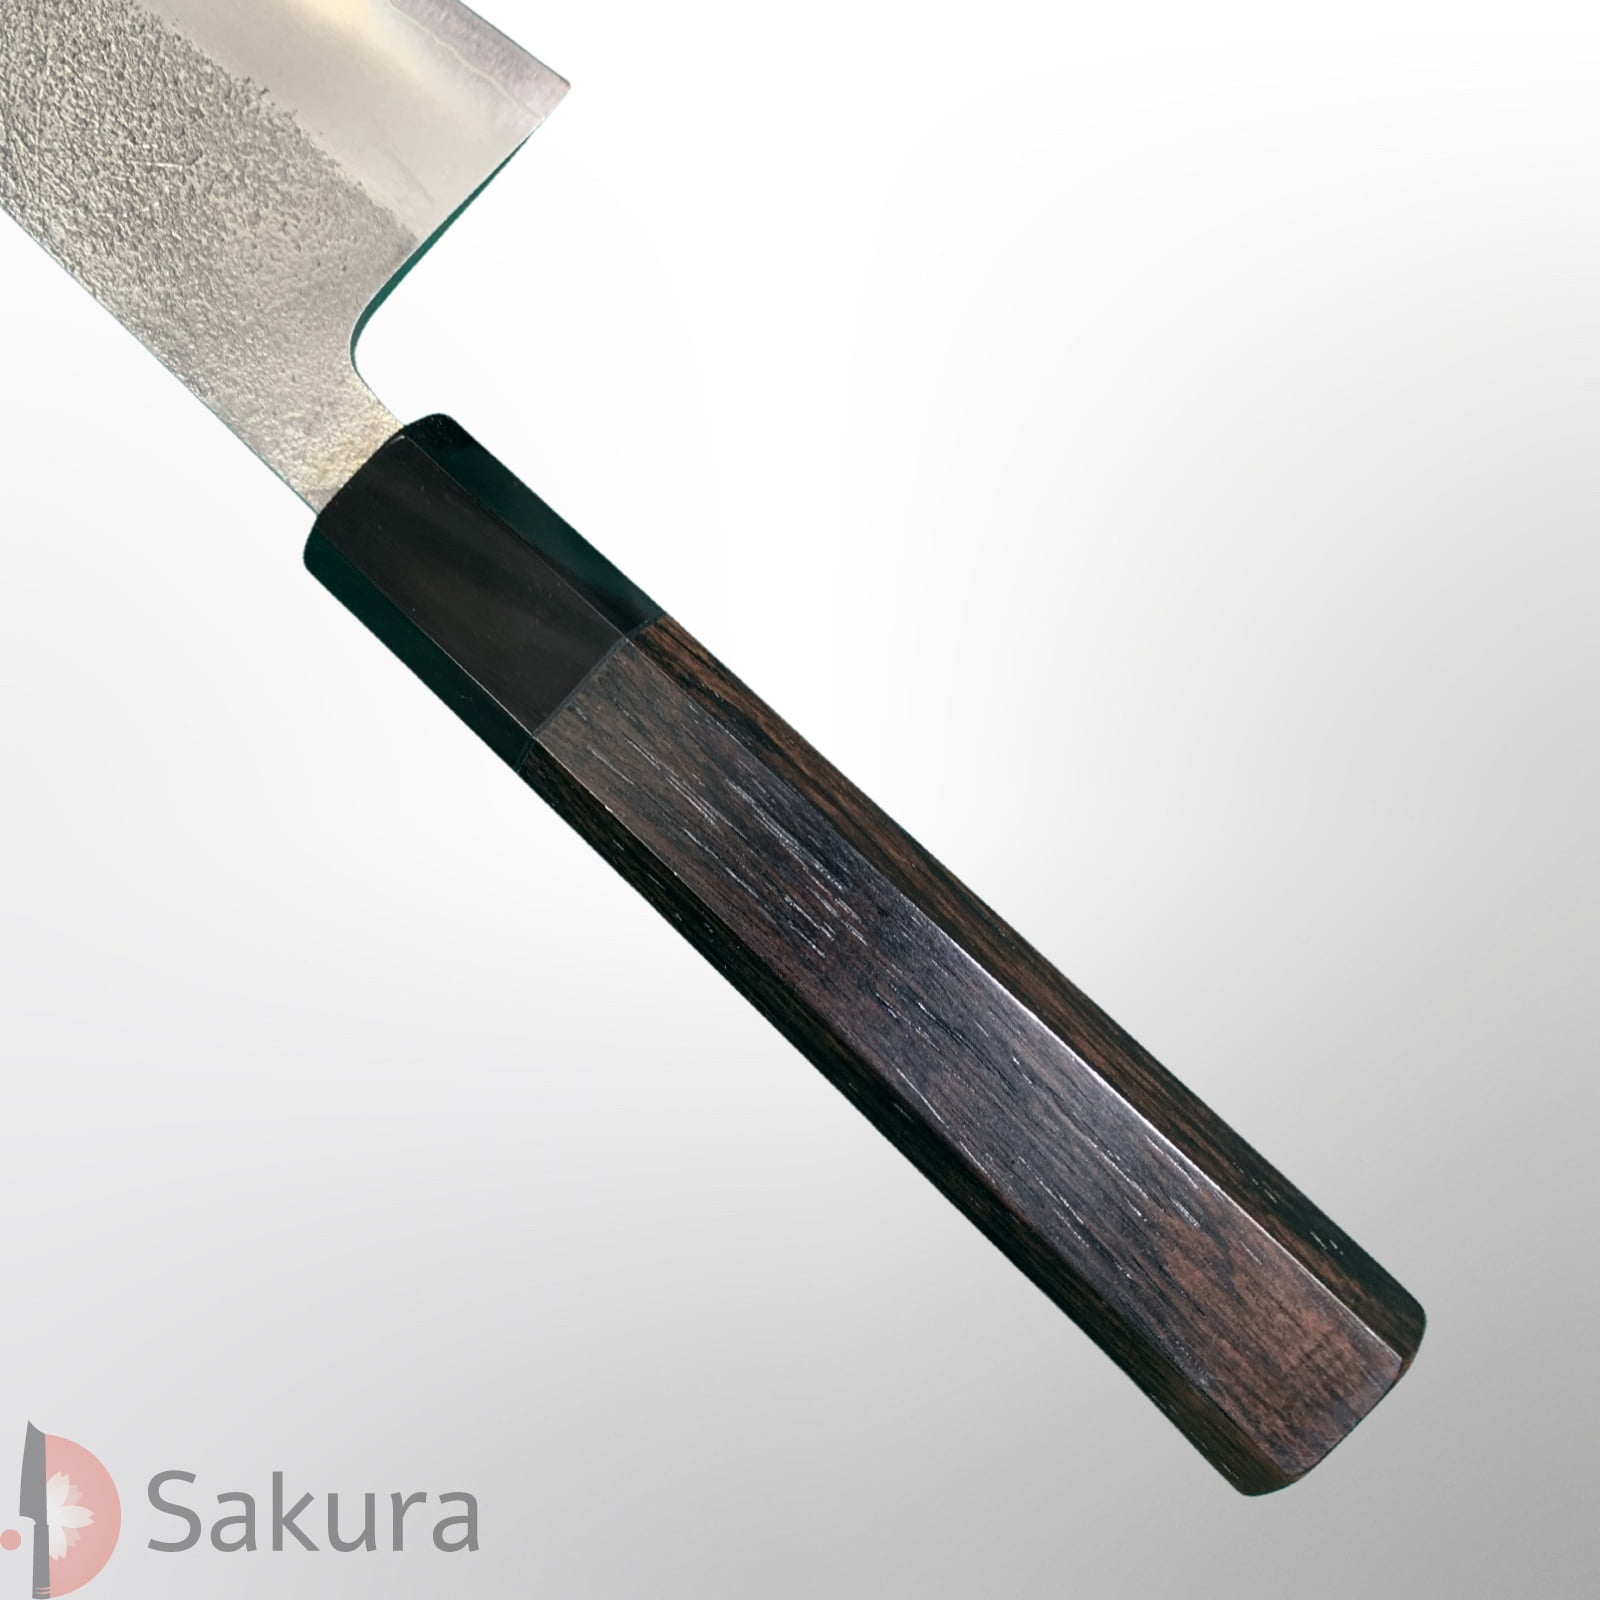 סכין רב-תכליתית בּוּנְקָה 165מ״מ מחושלת בעבודת יד 3 שכבות: פלדת פחמן יפנית מתקדמת מסוג SKD  פלדת אל-חלד גימור אל-חלד קורואוצ׳י מט חיספוס טבעי יושיקאנה יפן – SKYOSHSKDBUNK16524